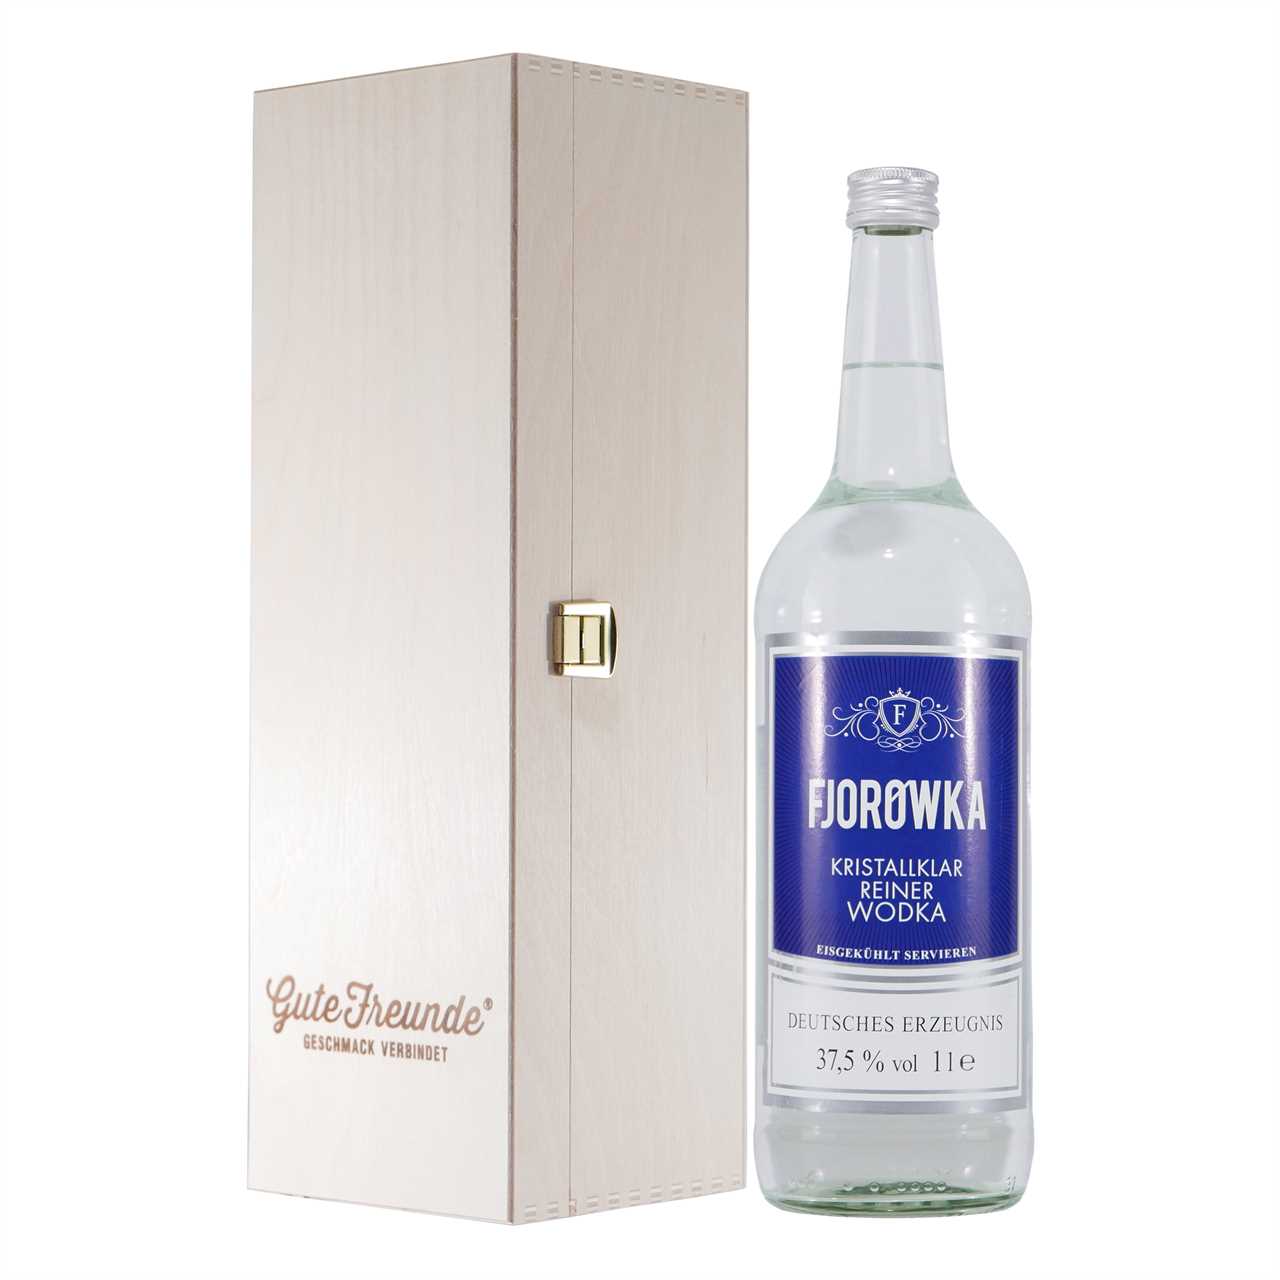 Fjorowka Wodka mit Geschenk-Holzkiste